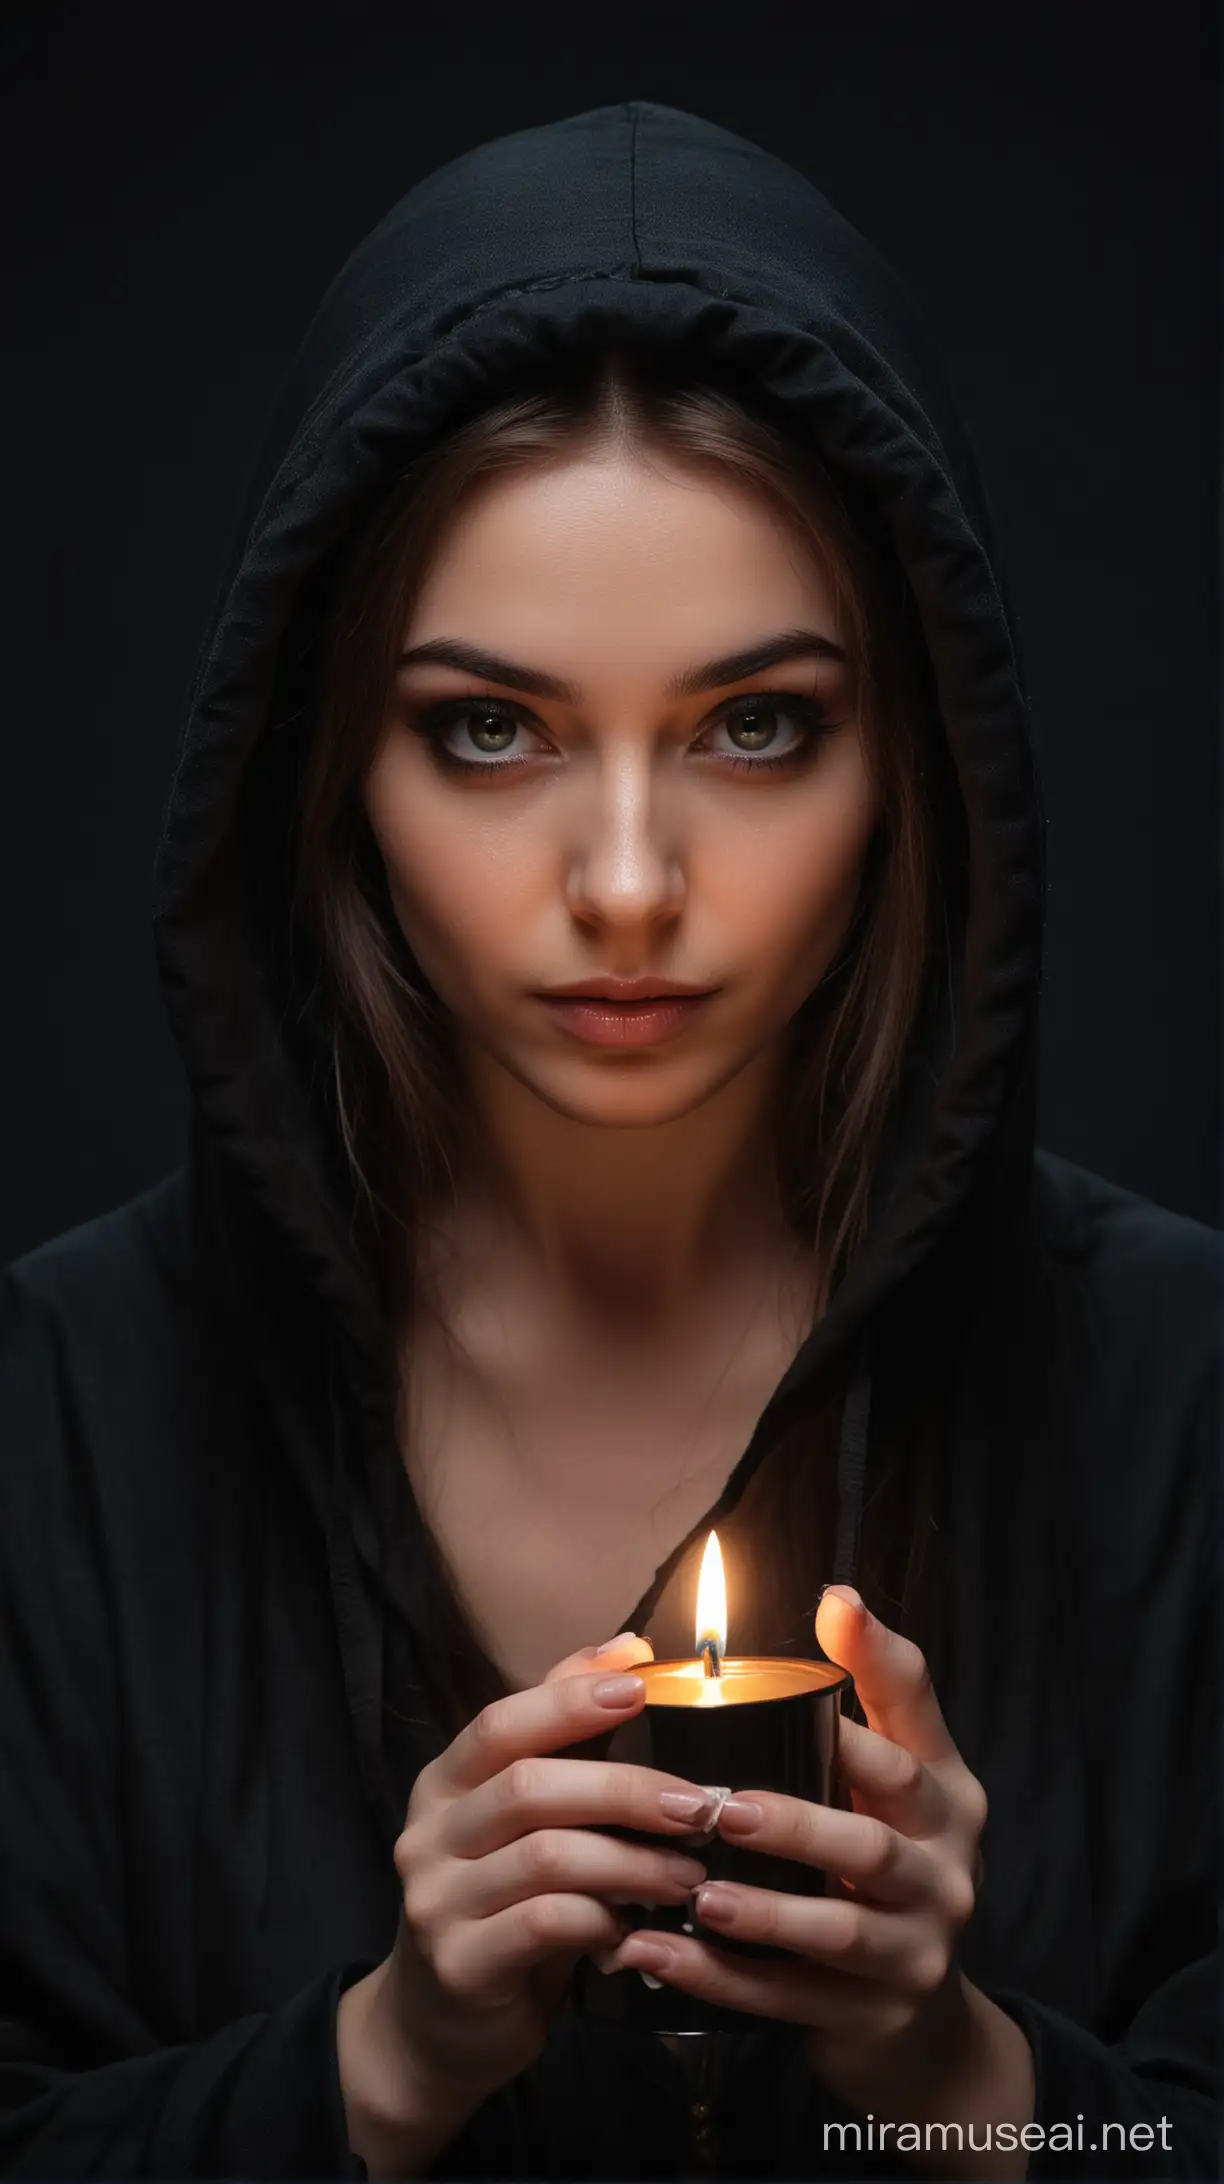 Очень красивая девушка в чёрном капюшоне, взгляд колдунья. На чёрном фоне, держит перед собой свечу